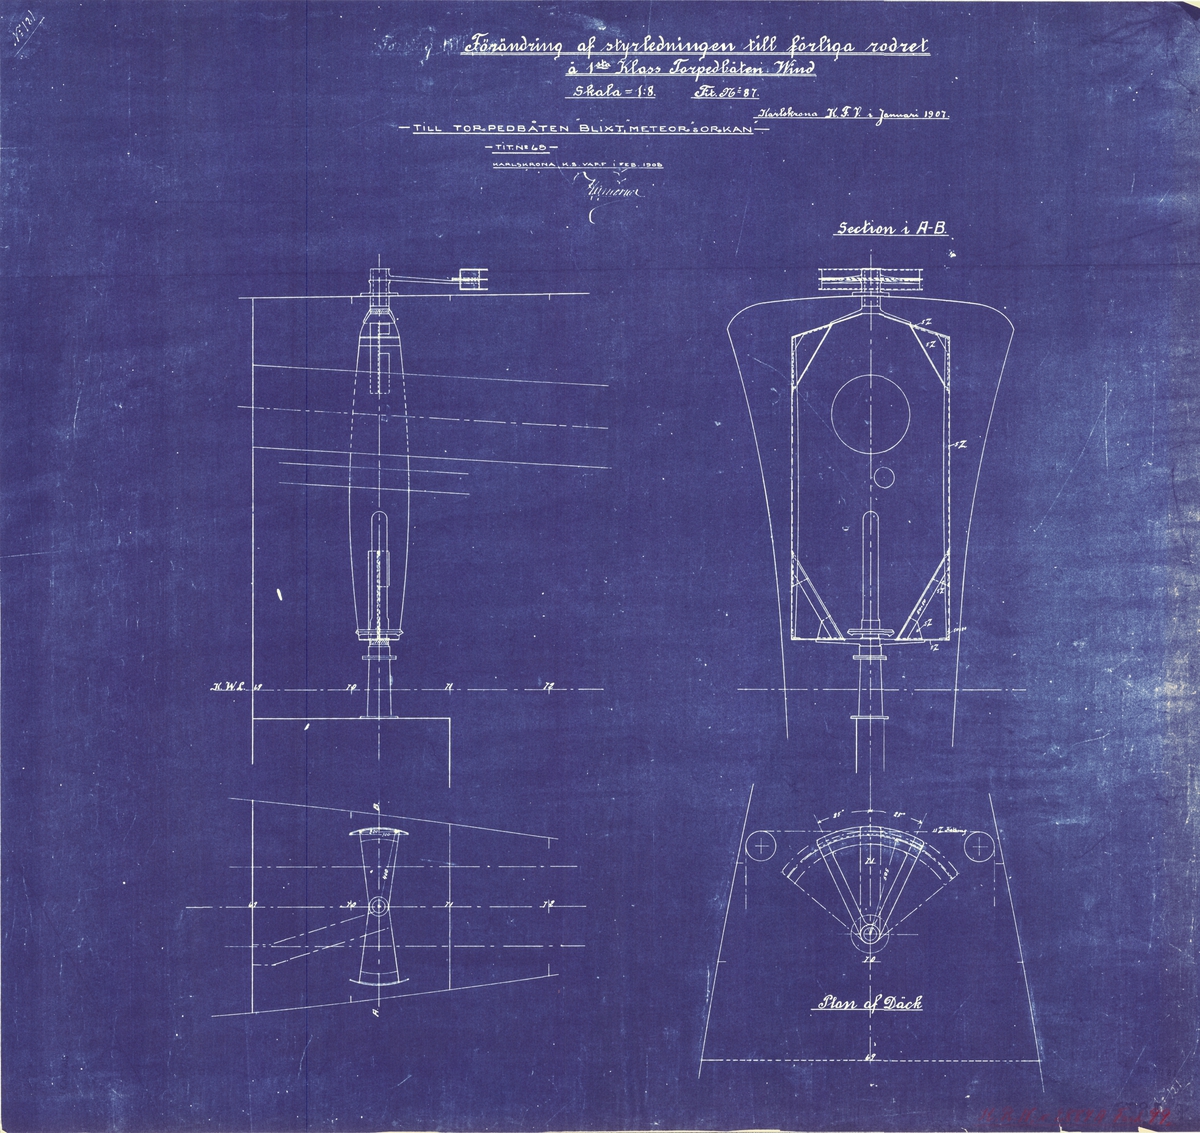 Ritning gällande förändring av styrledningen till förliga rodret. Till torpedbåtarna Blixt, Meteor och Orkan ritning daterad 1908